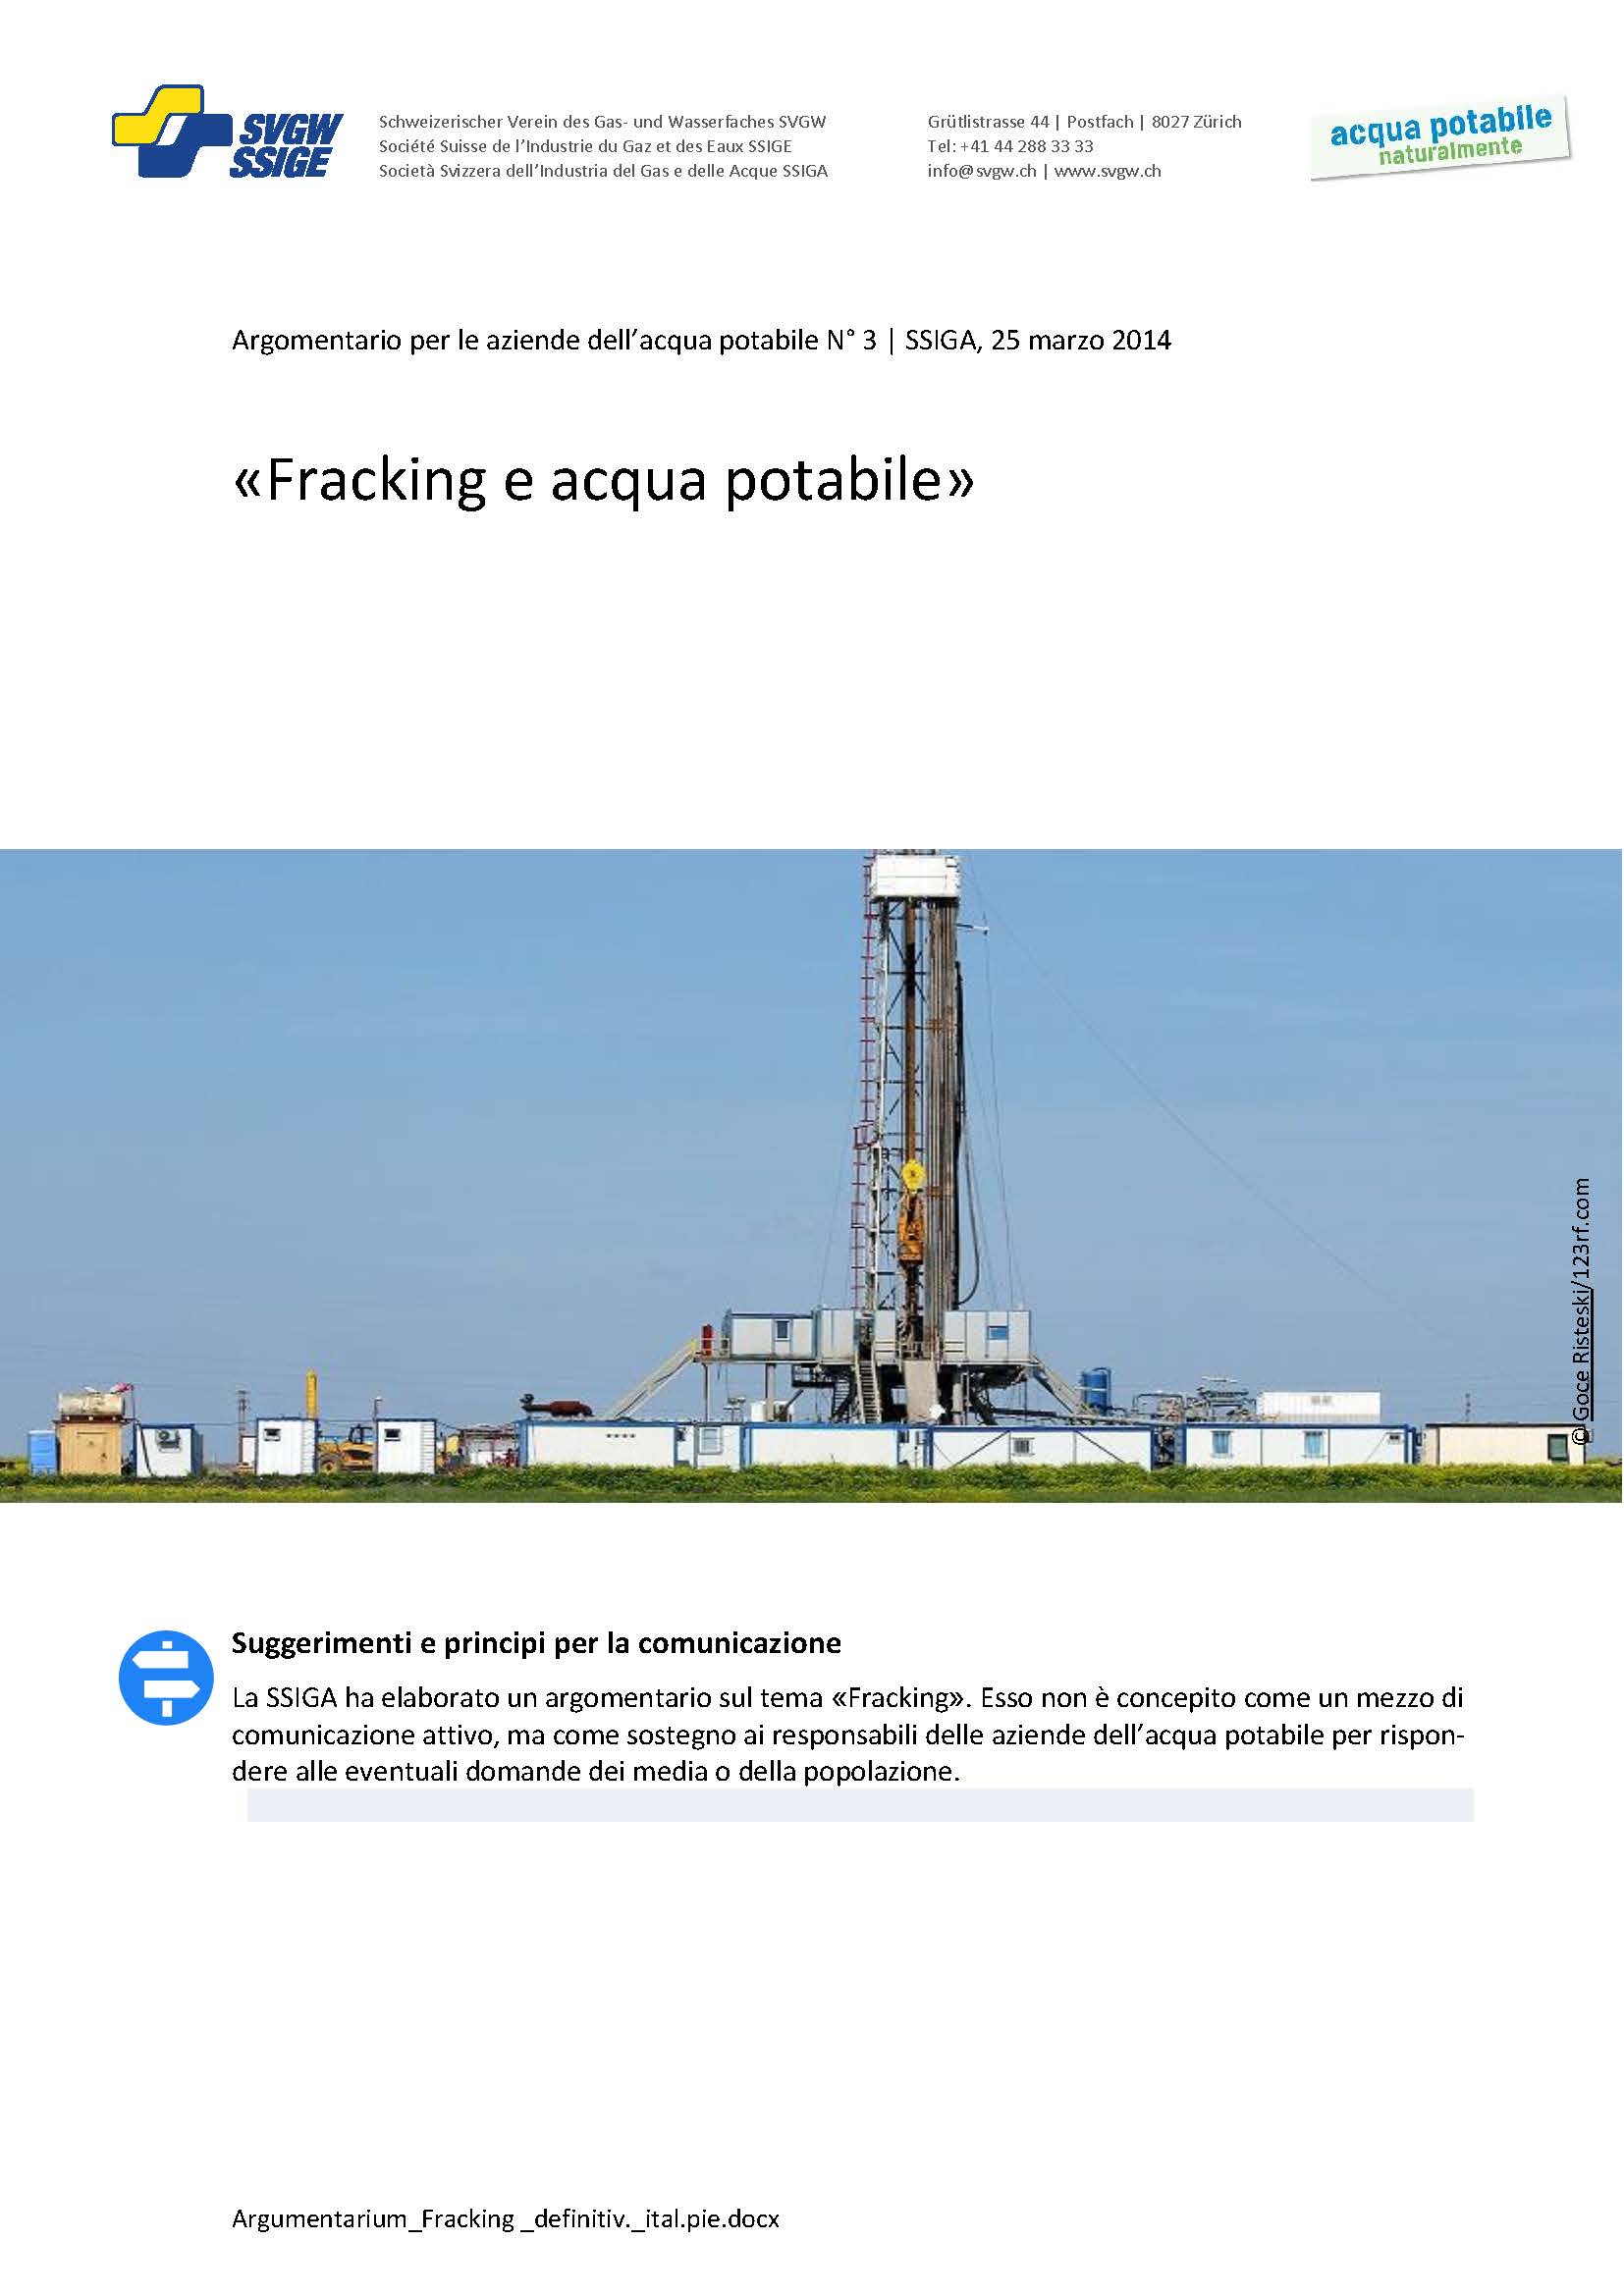 Argomentazione: «Fracking e acqua potabile»